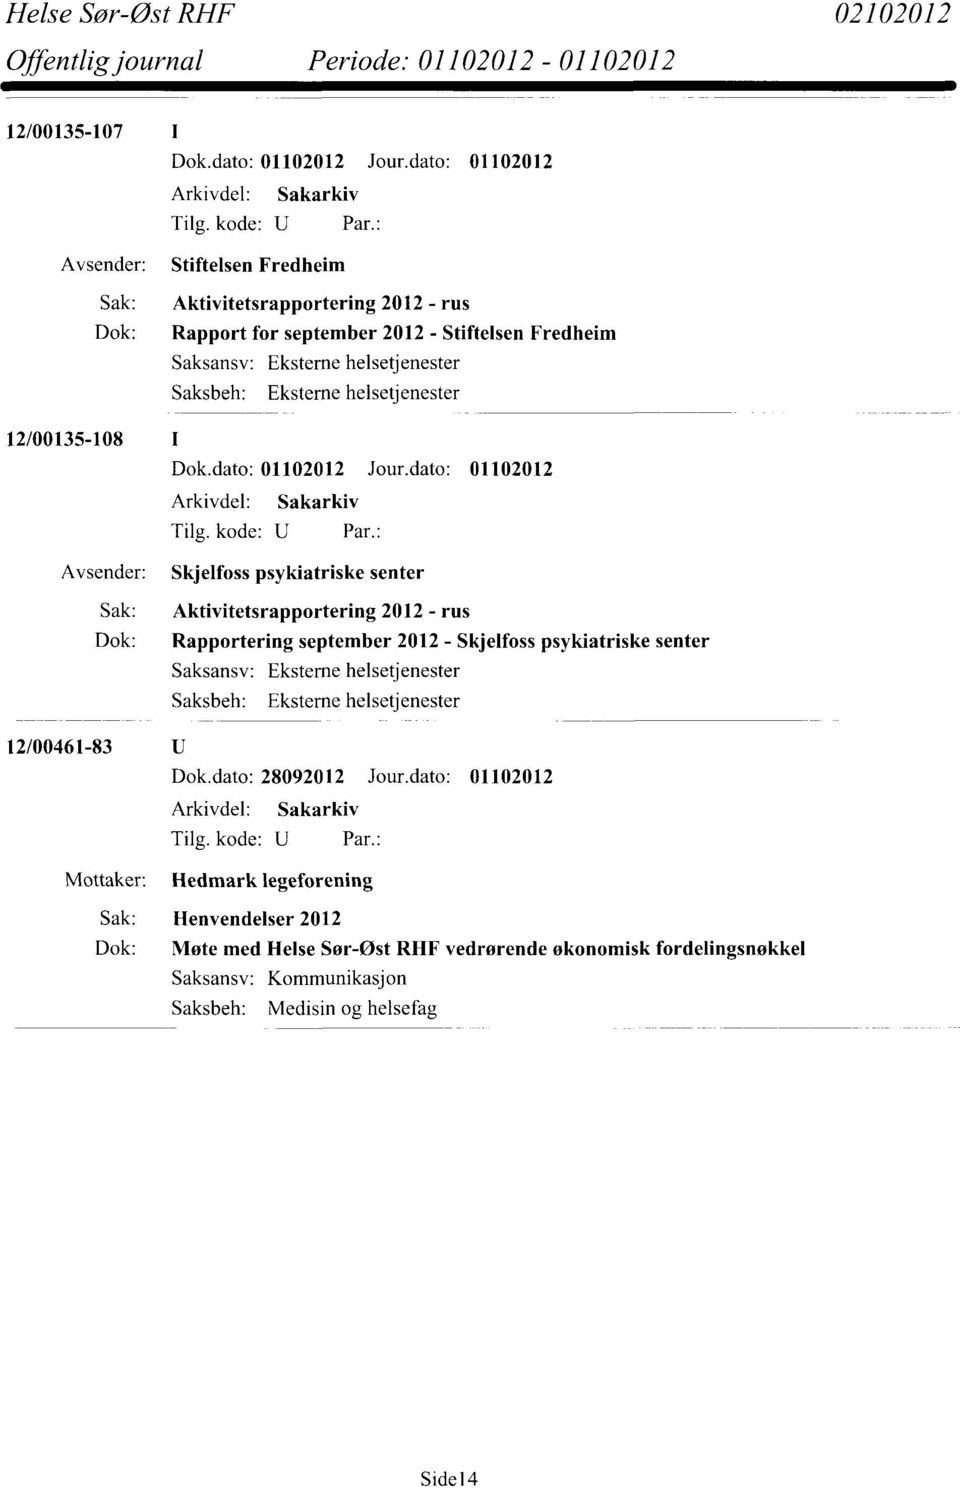 Skjelfoss psykiatriske senter Saksansv: Eksteme helsetjenester 12/00461-83 Dok.dato: 28092012 Jour.